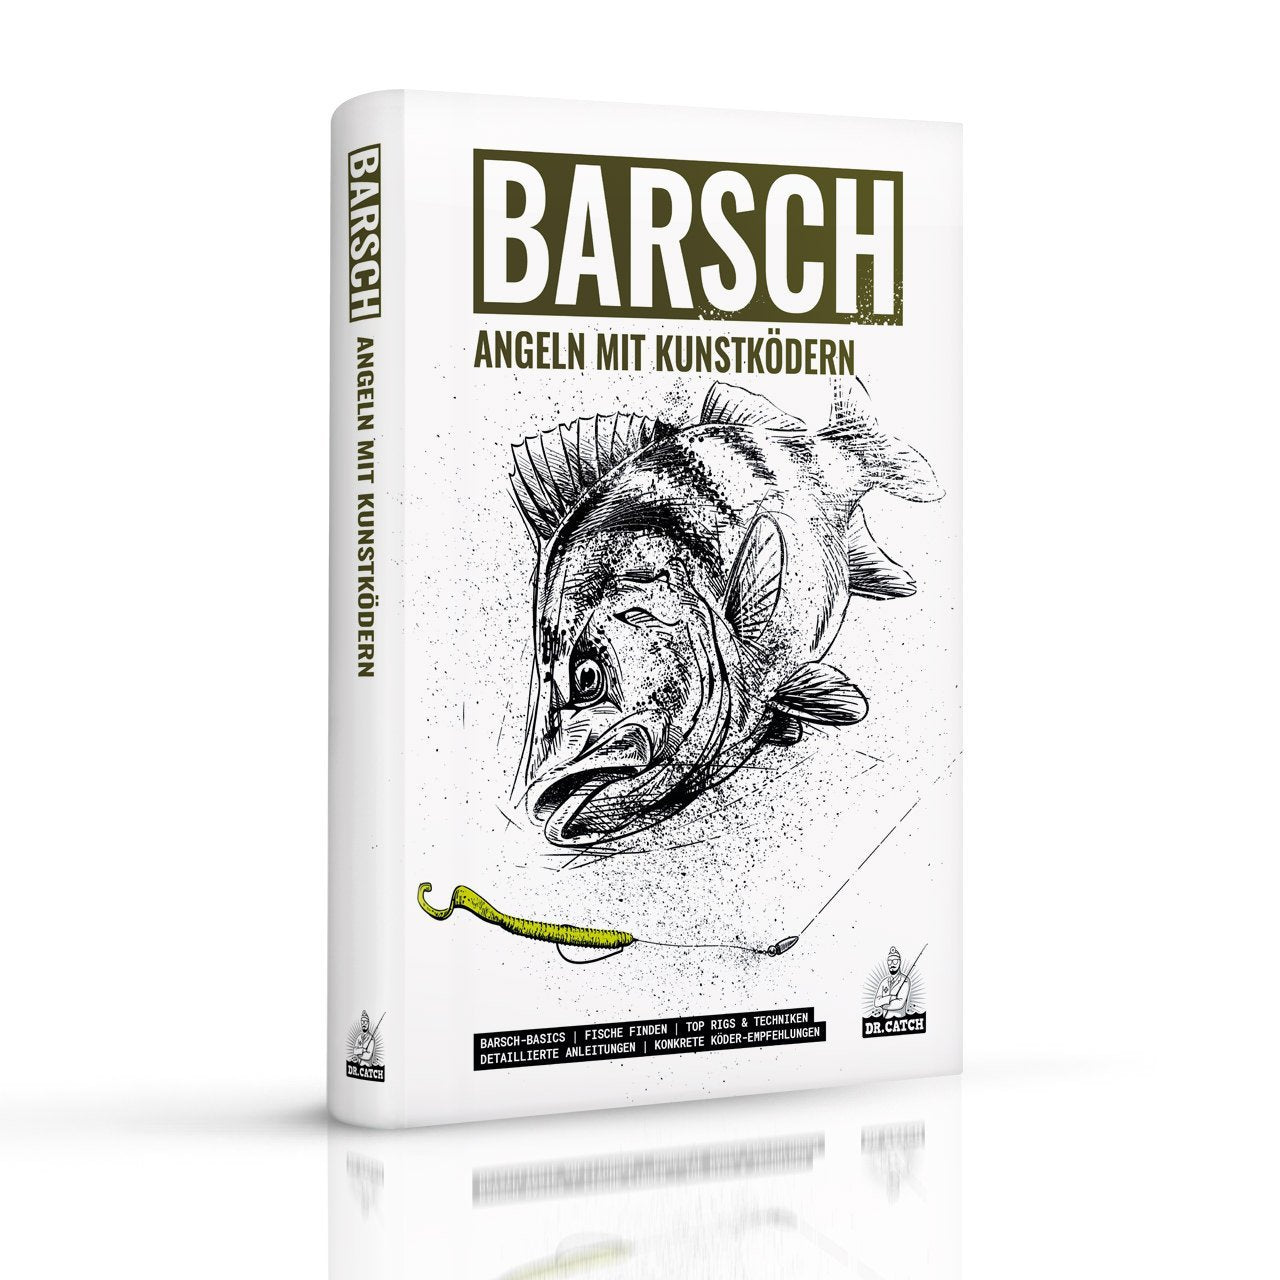 Barschbuch – Angeln mit Kunstködern